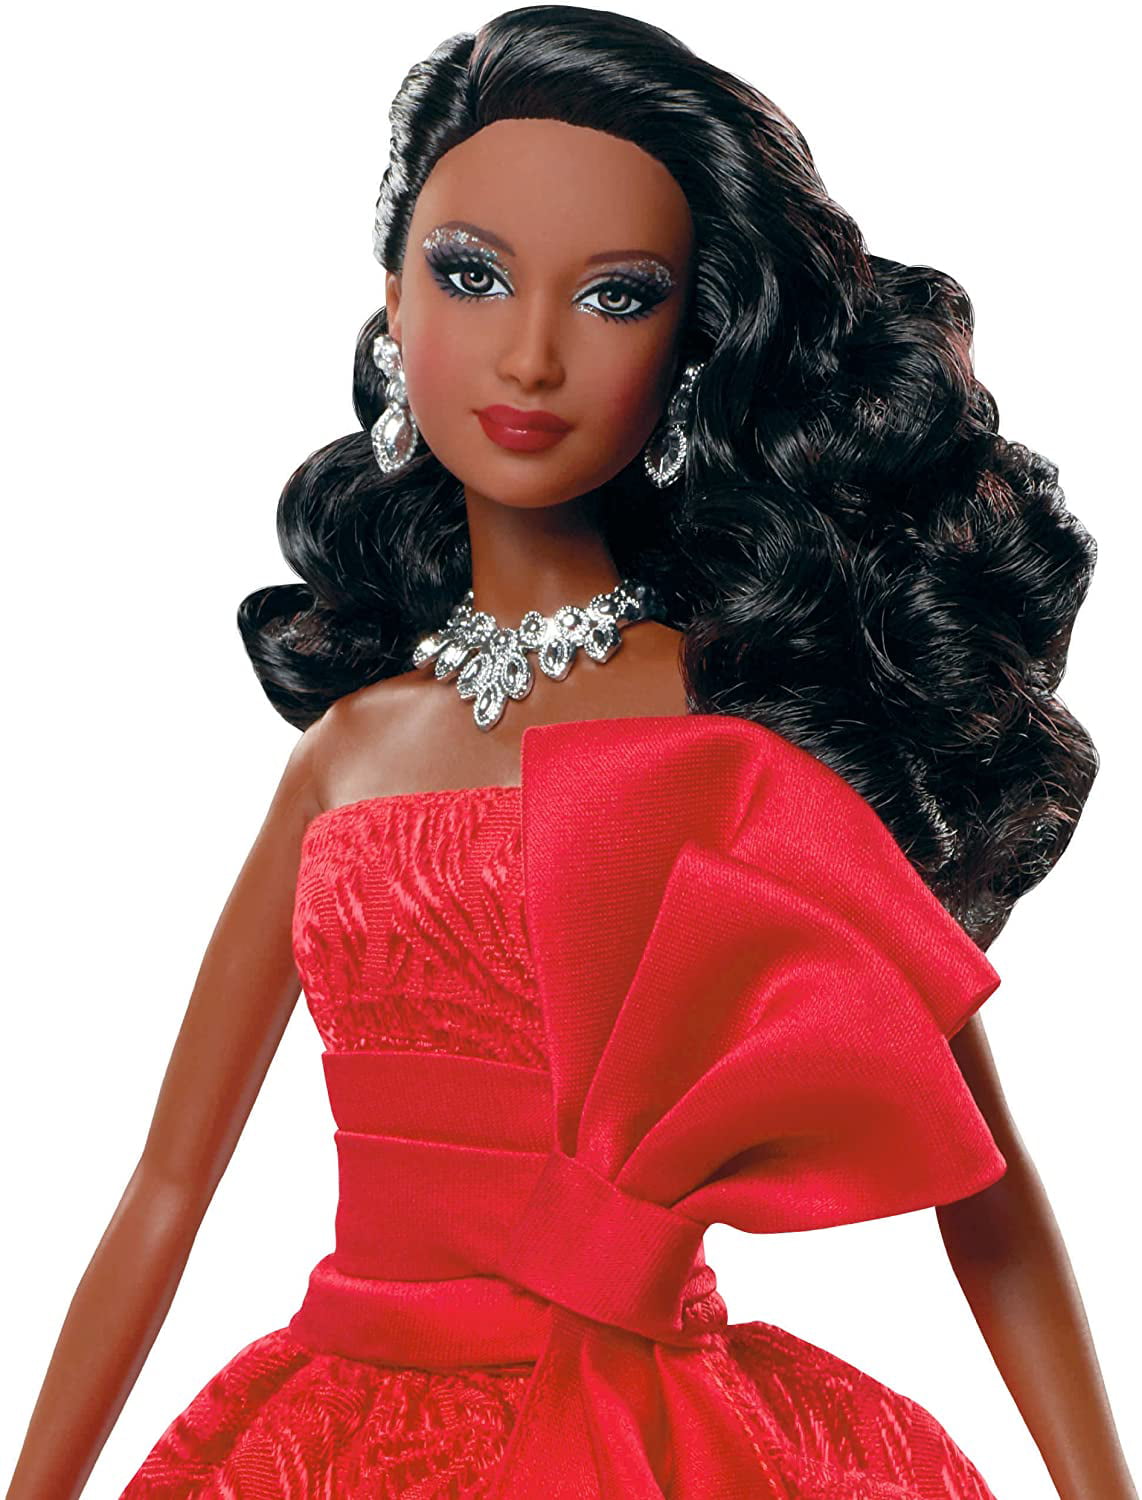 Барби holiday. Кукла Барби Холидей. Barbie Holiday 2012. Кукла Barbie - Барби "праздничная - 2015 год". Кукла Барби афроамериканка.